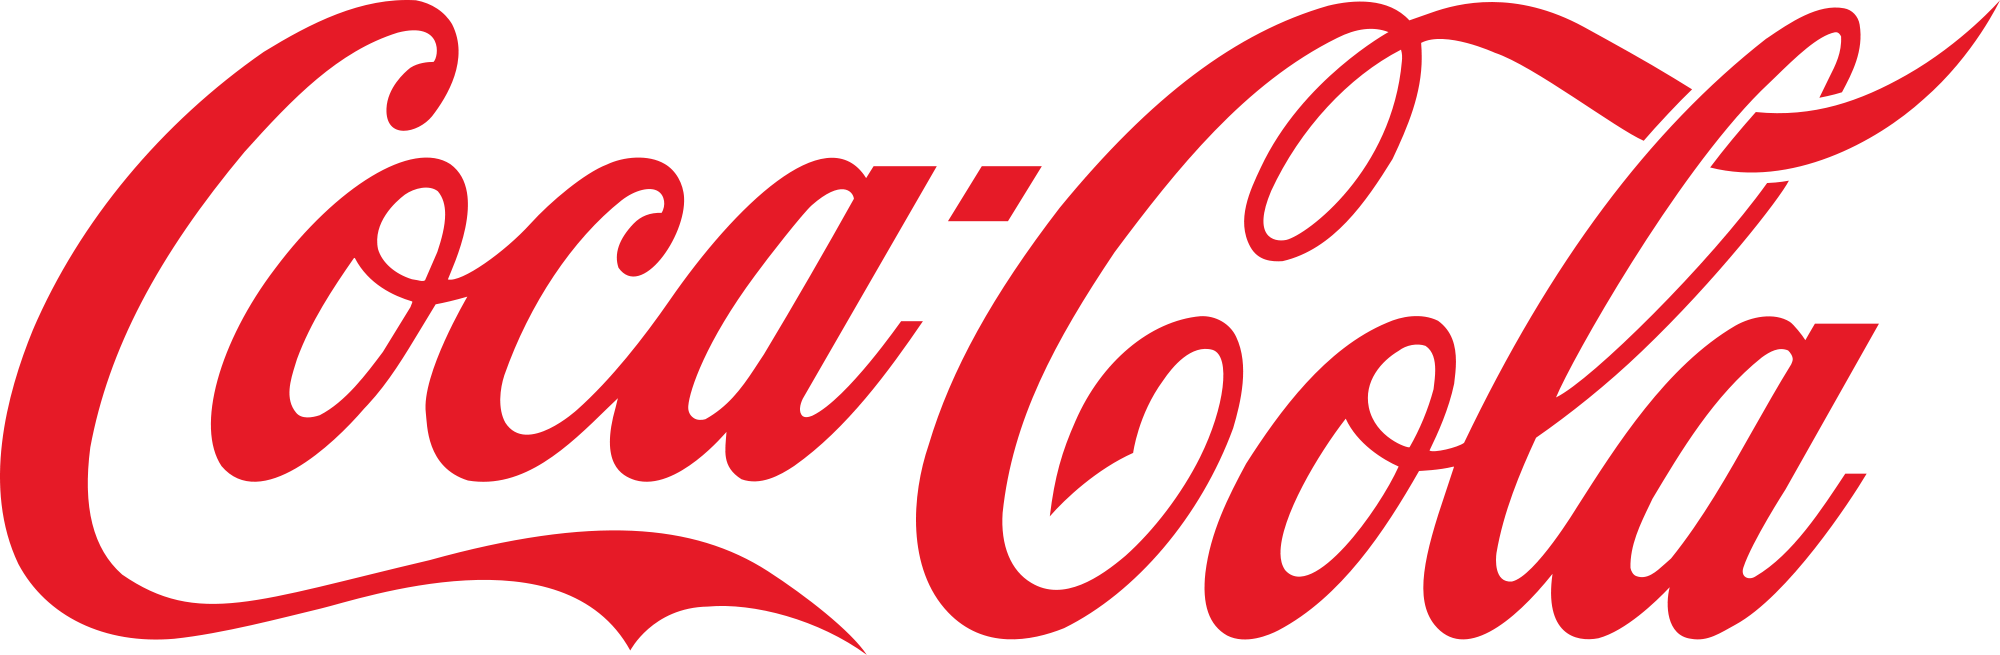 2000px-Coca-Cola_logo.png